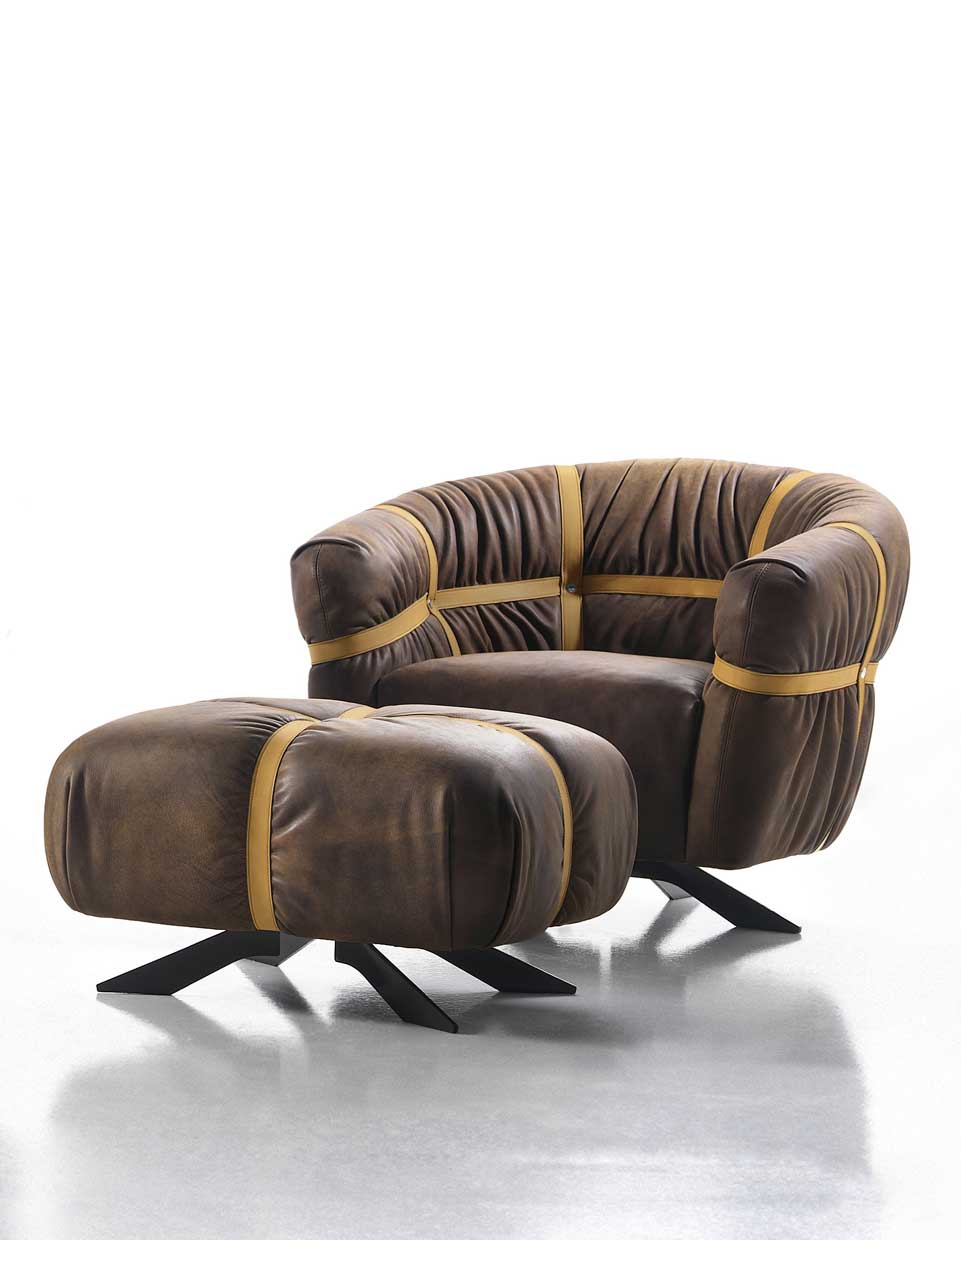 Fauteuil design et original en cuir marron signé Giuseppe Viganò. Vente en ligne de fauteuils hauts de gamme made in italy avec livraison gratuite.